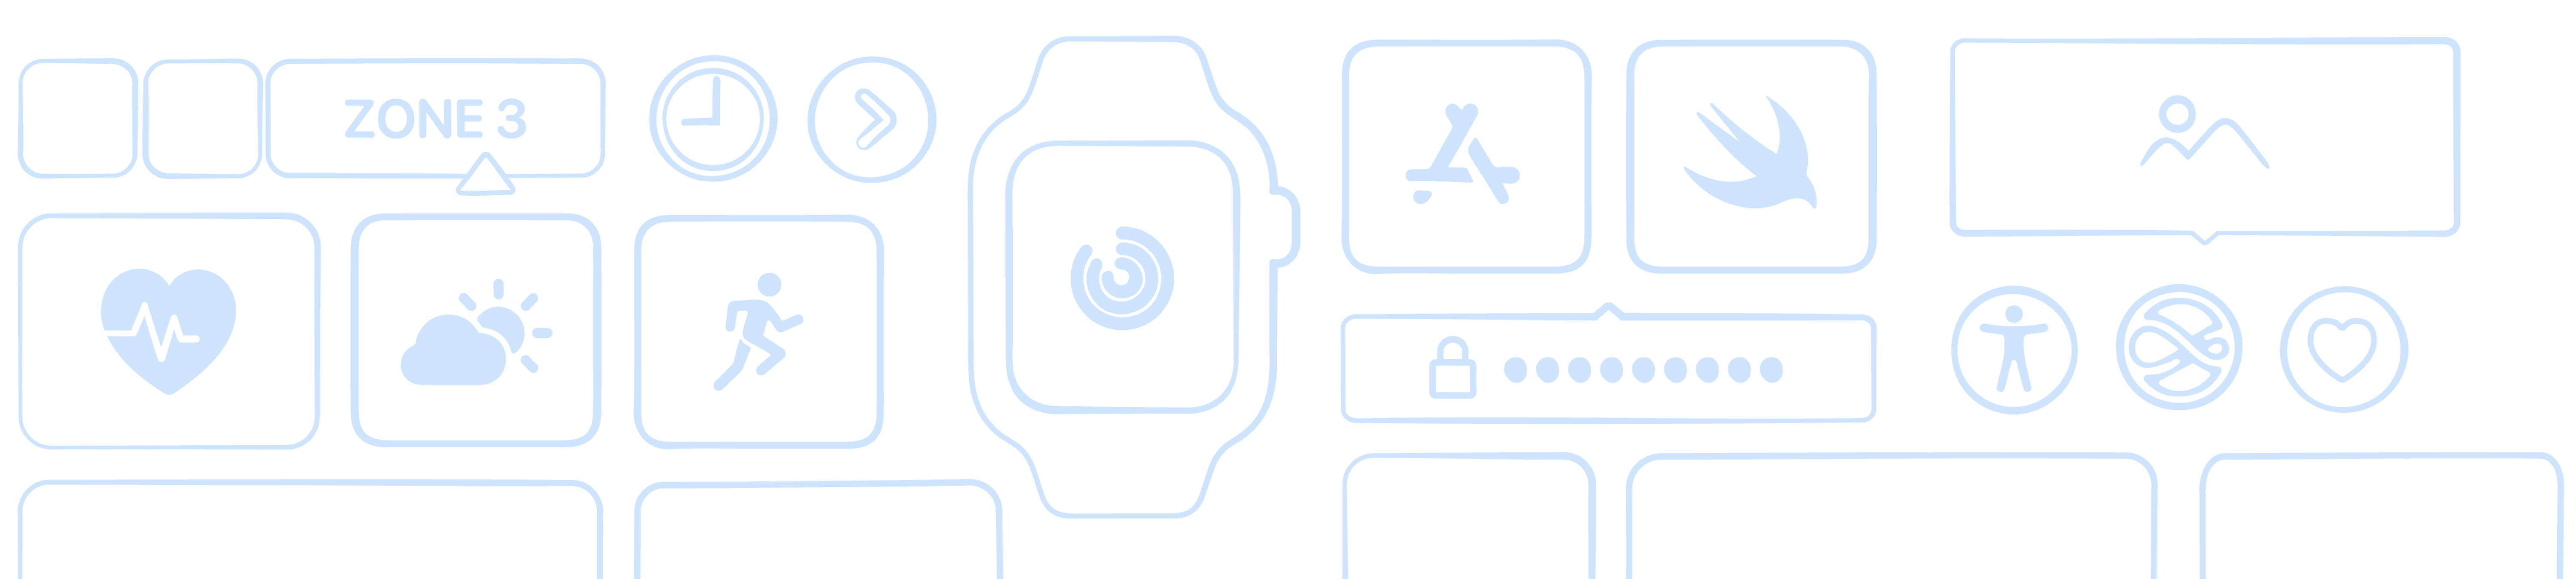 含有 watchOS App 新创意和技术的故事板。